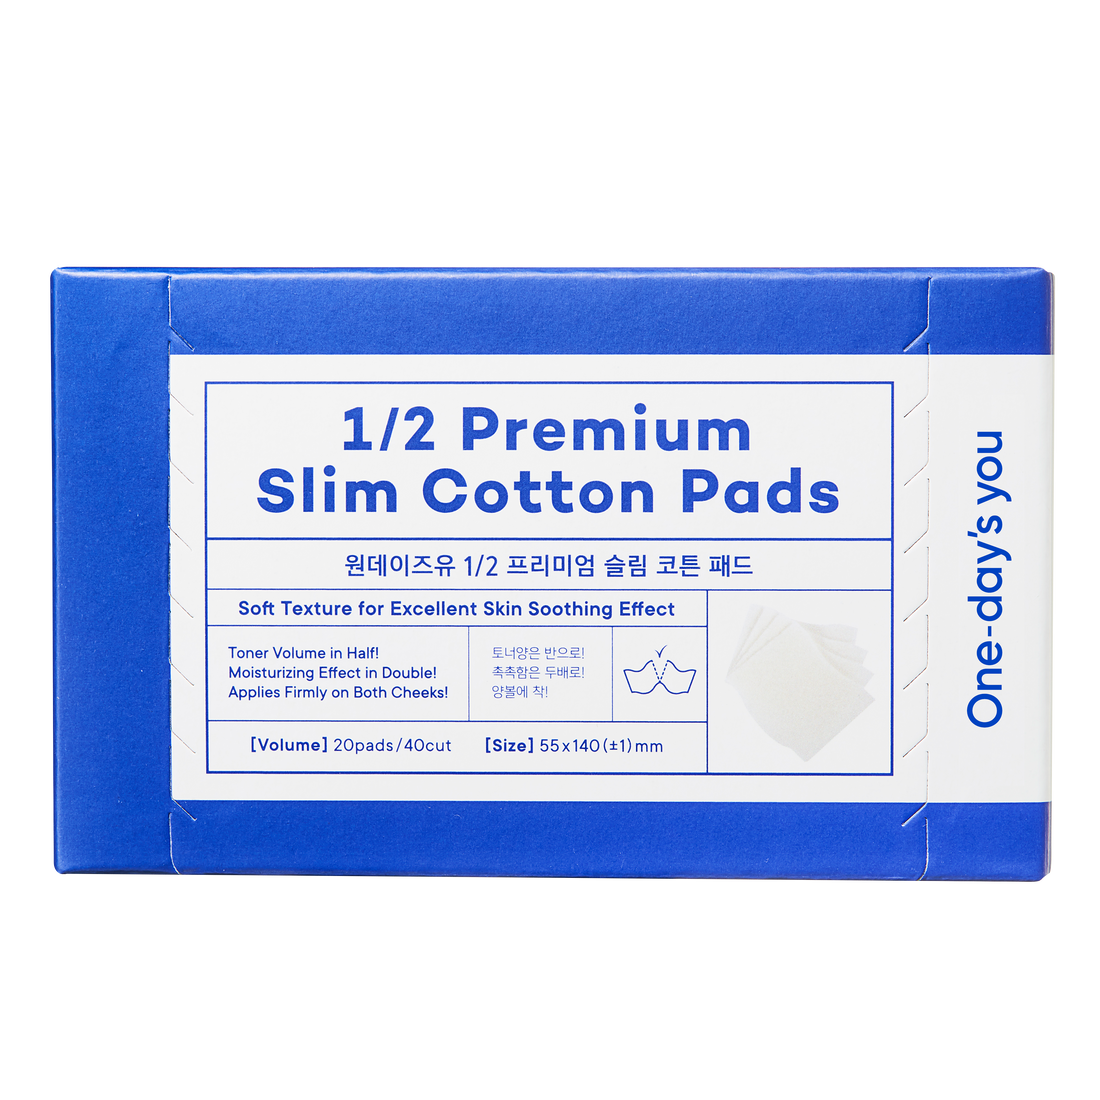 1/2 Premium Slim Cotton Pads